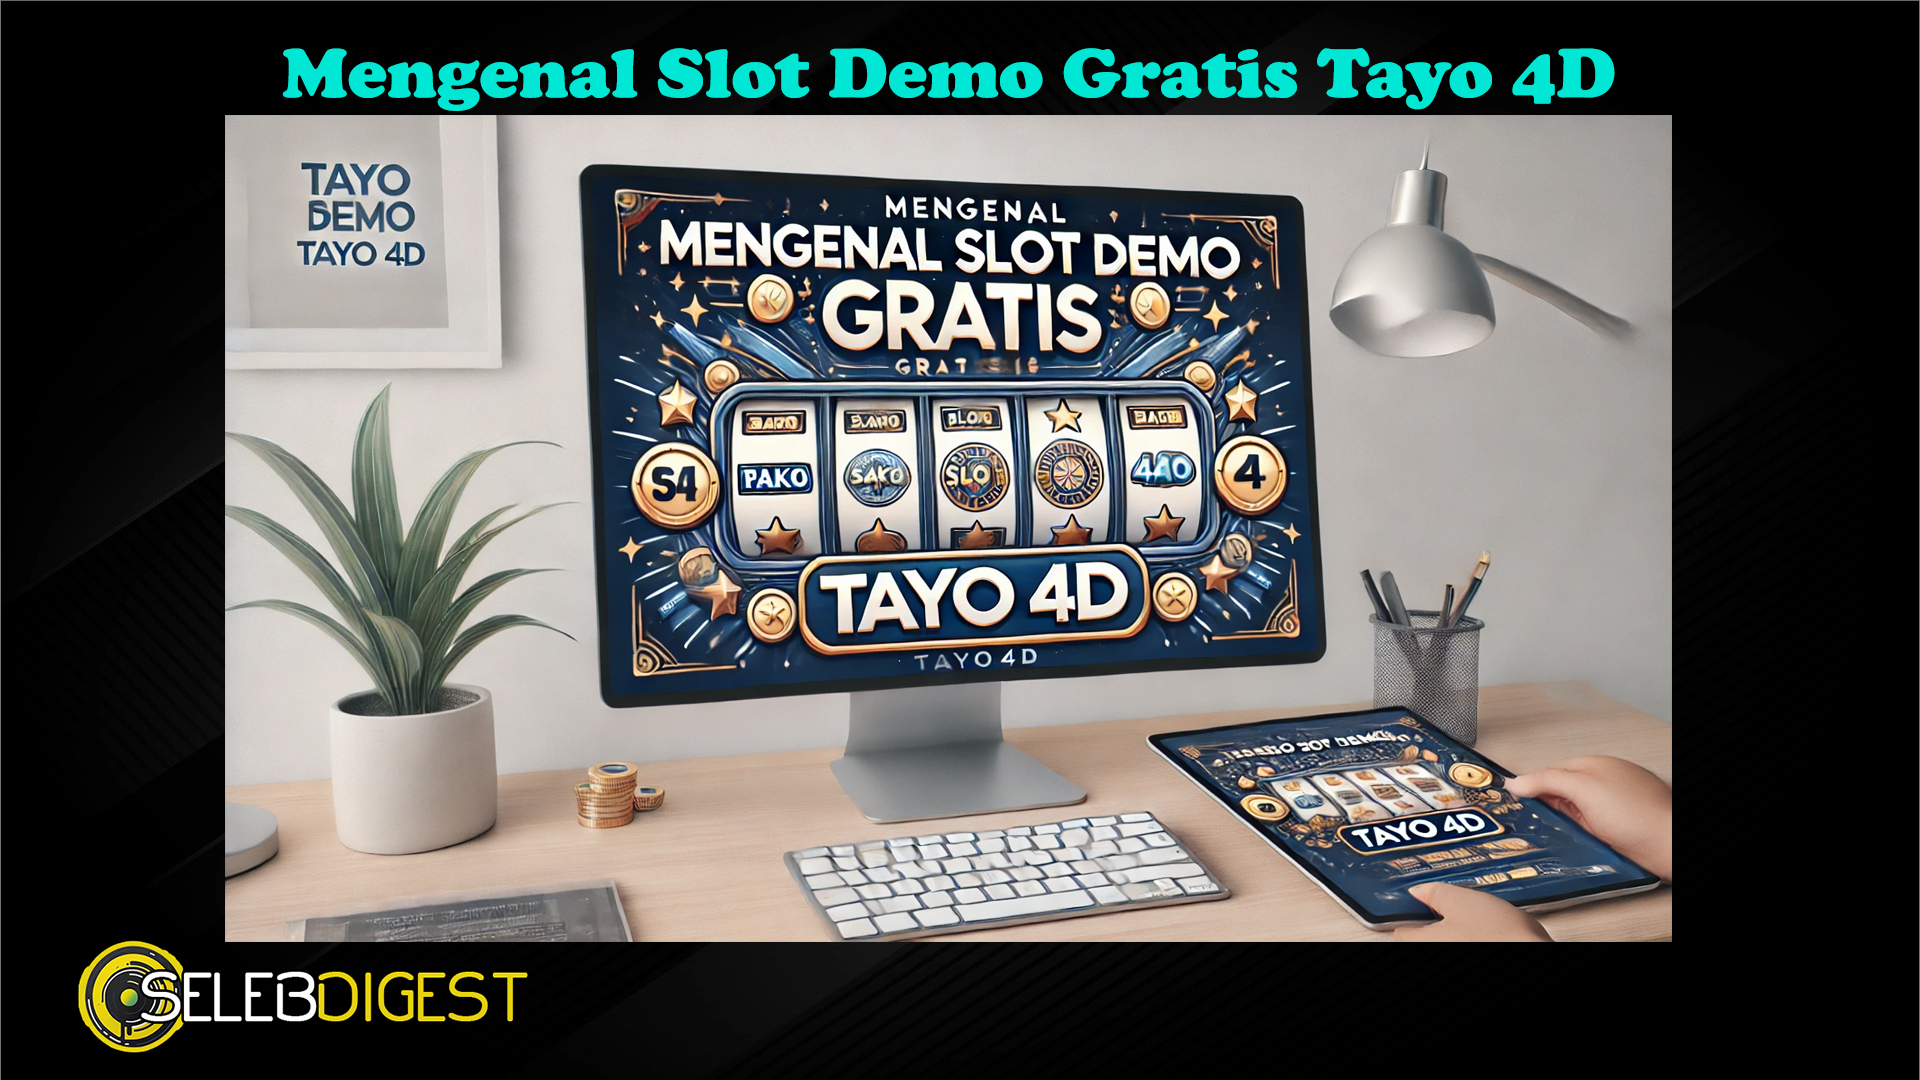 Mengenal Slot Demo Gratis Tayo 4D